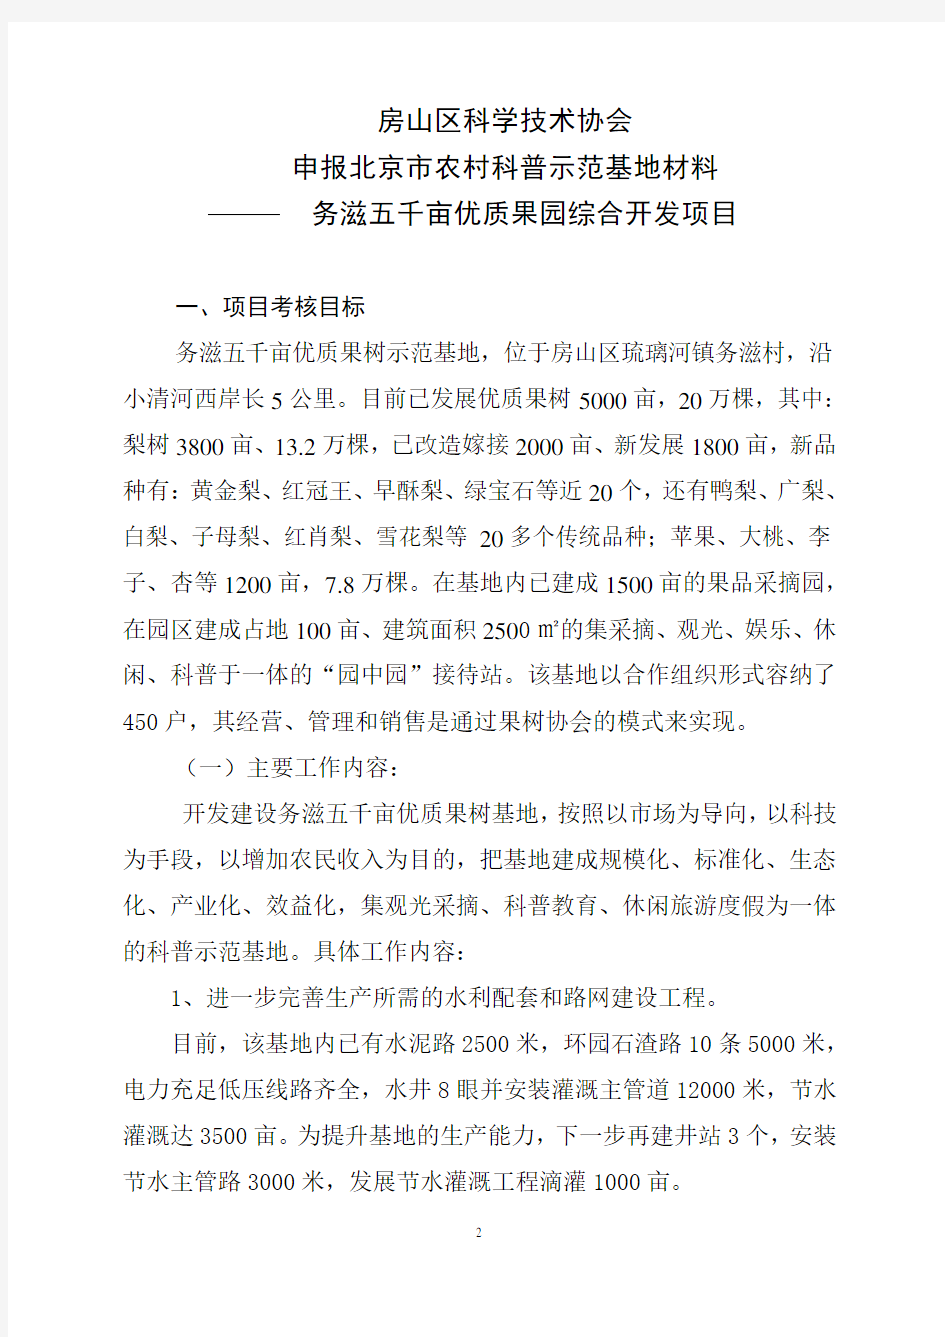 北京市农村科普示范基地项目申报书